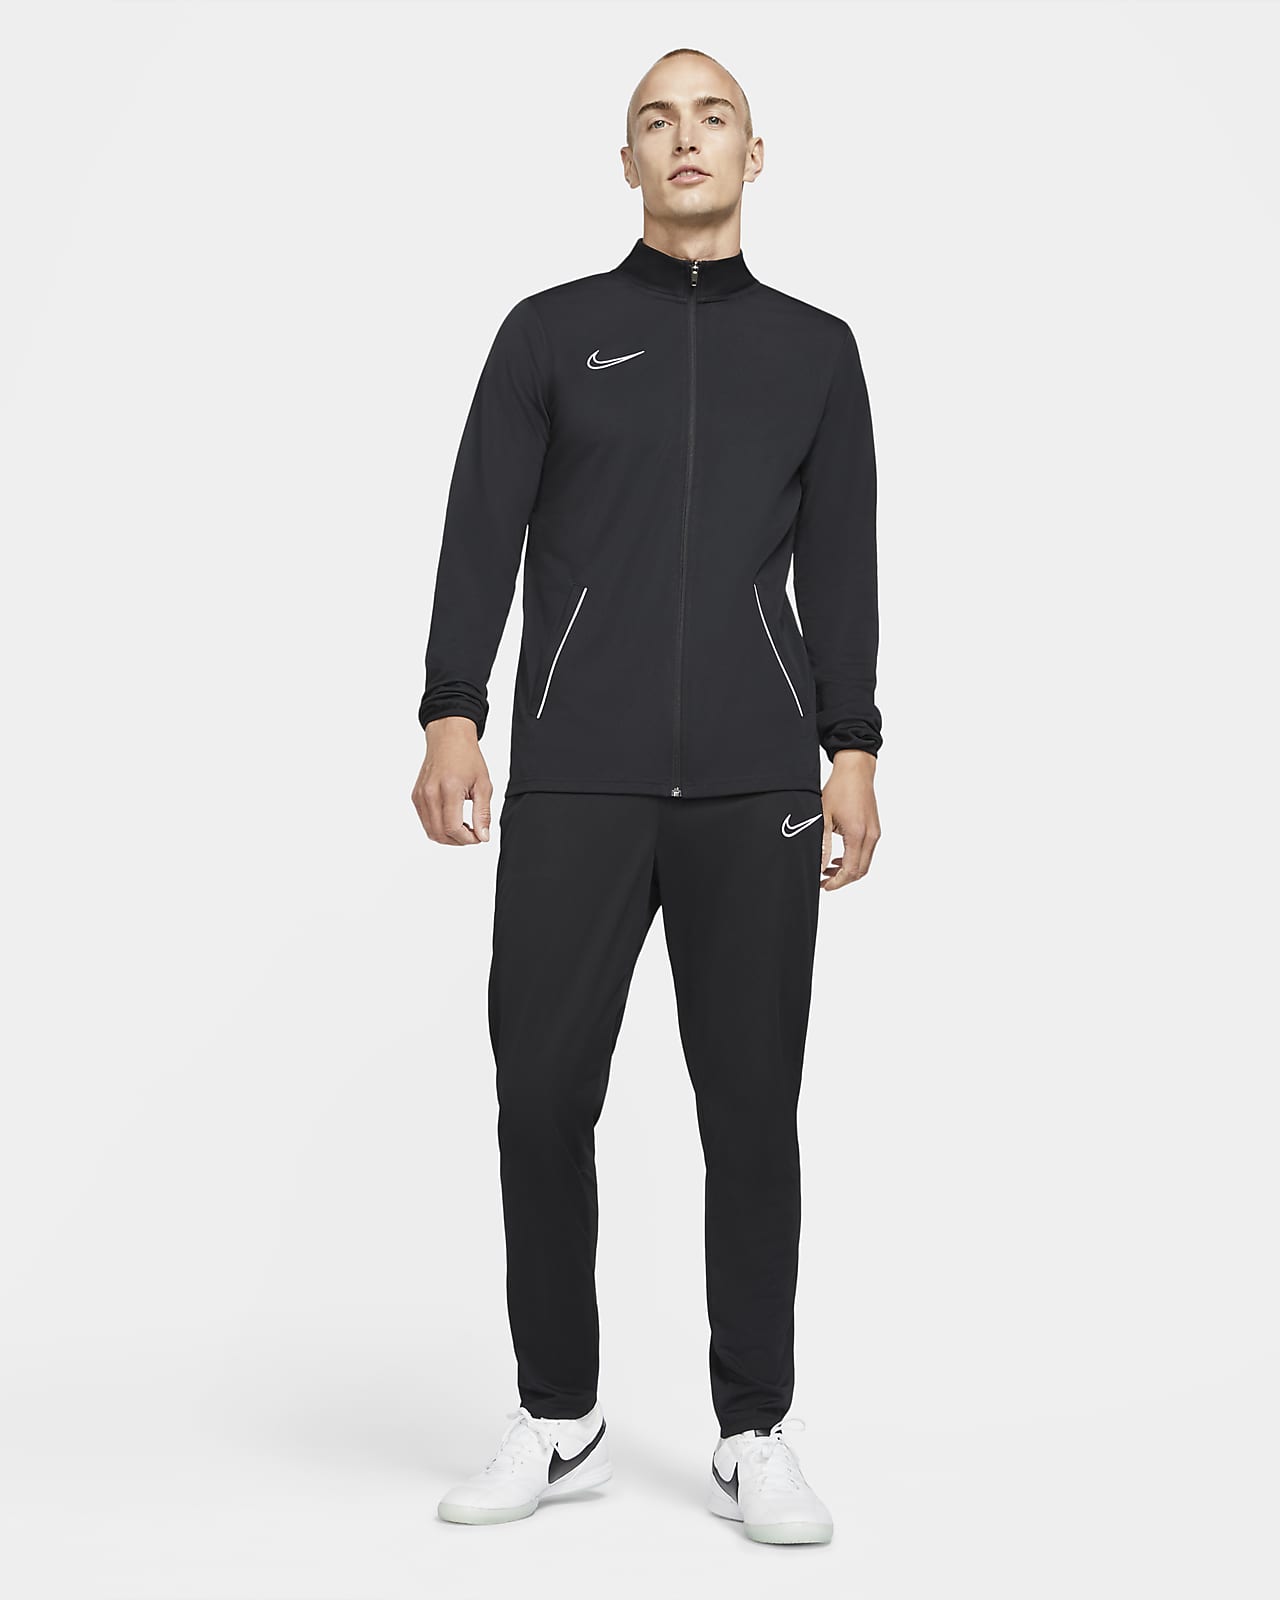 nada milagro orden Nike Dri-FIT Academy Chándal de fútbol de tejido Knit - Hombre. Nike ES